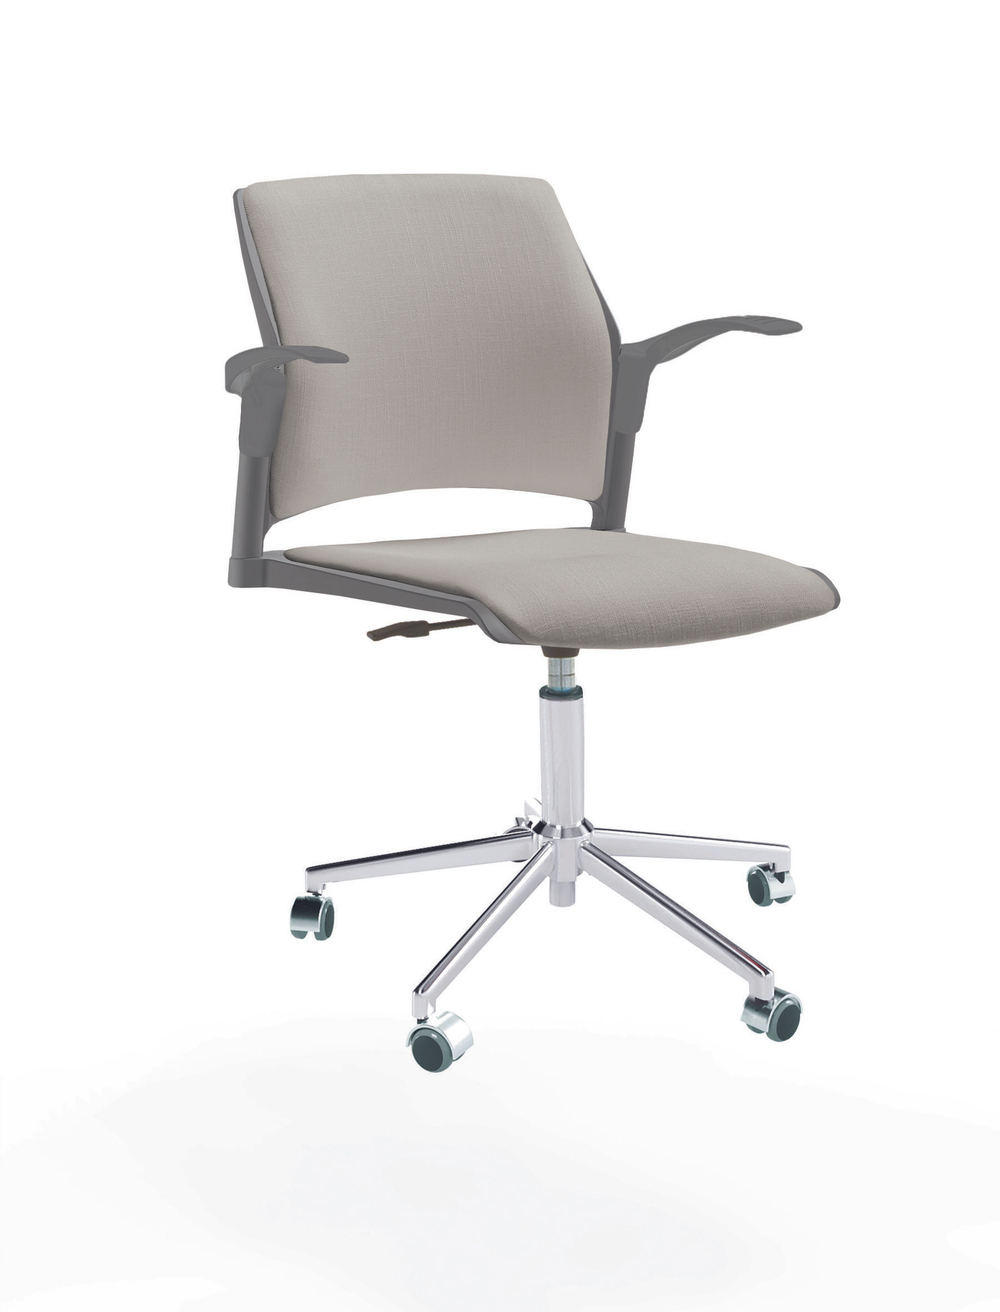 Кресло Rewind каркас хром, пластик серый, база стальная хромированная, с открытыми подлокотниками, сиденье и спинка светло-серые